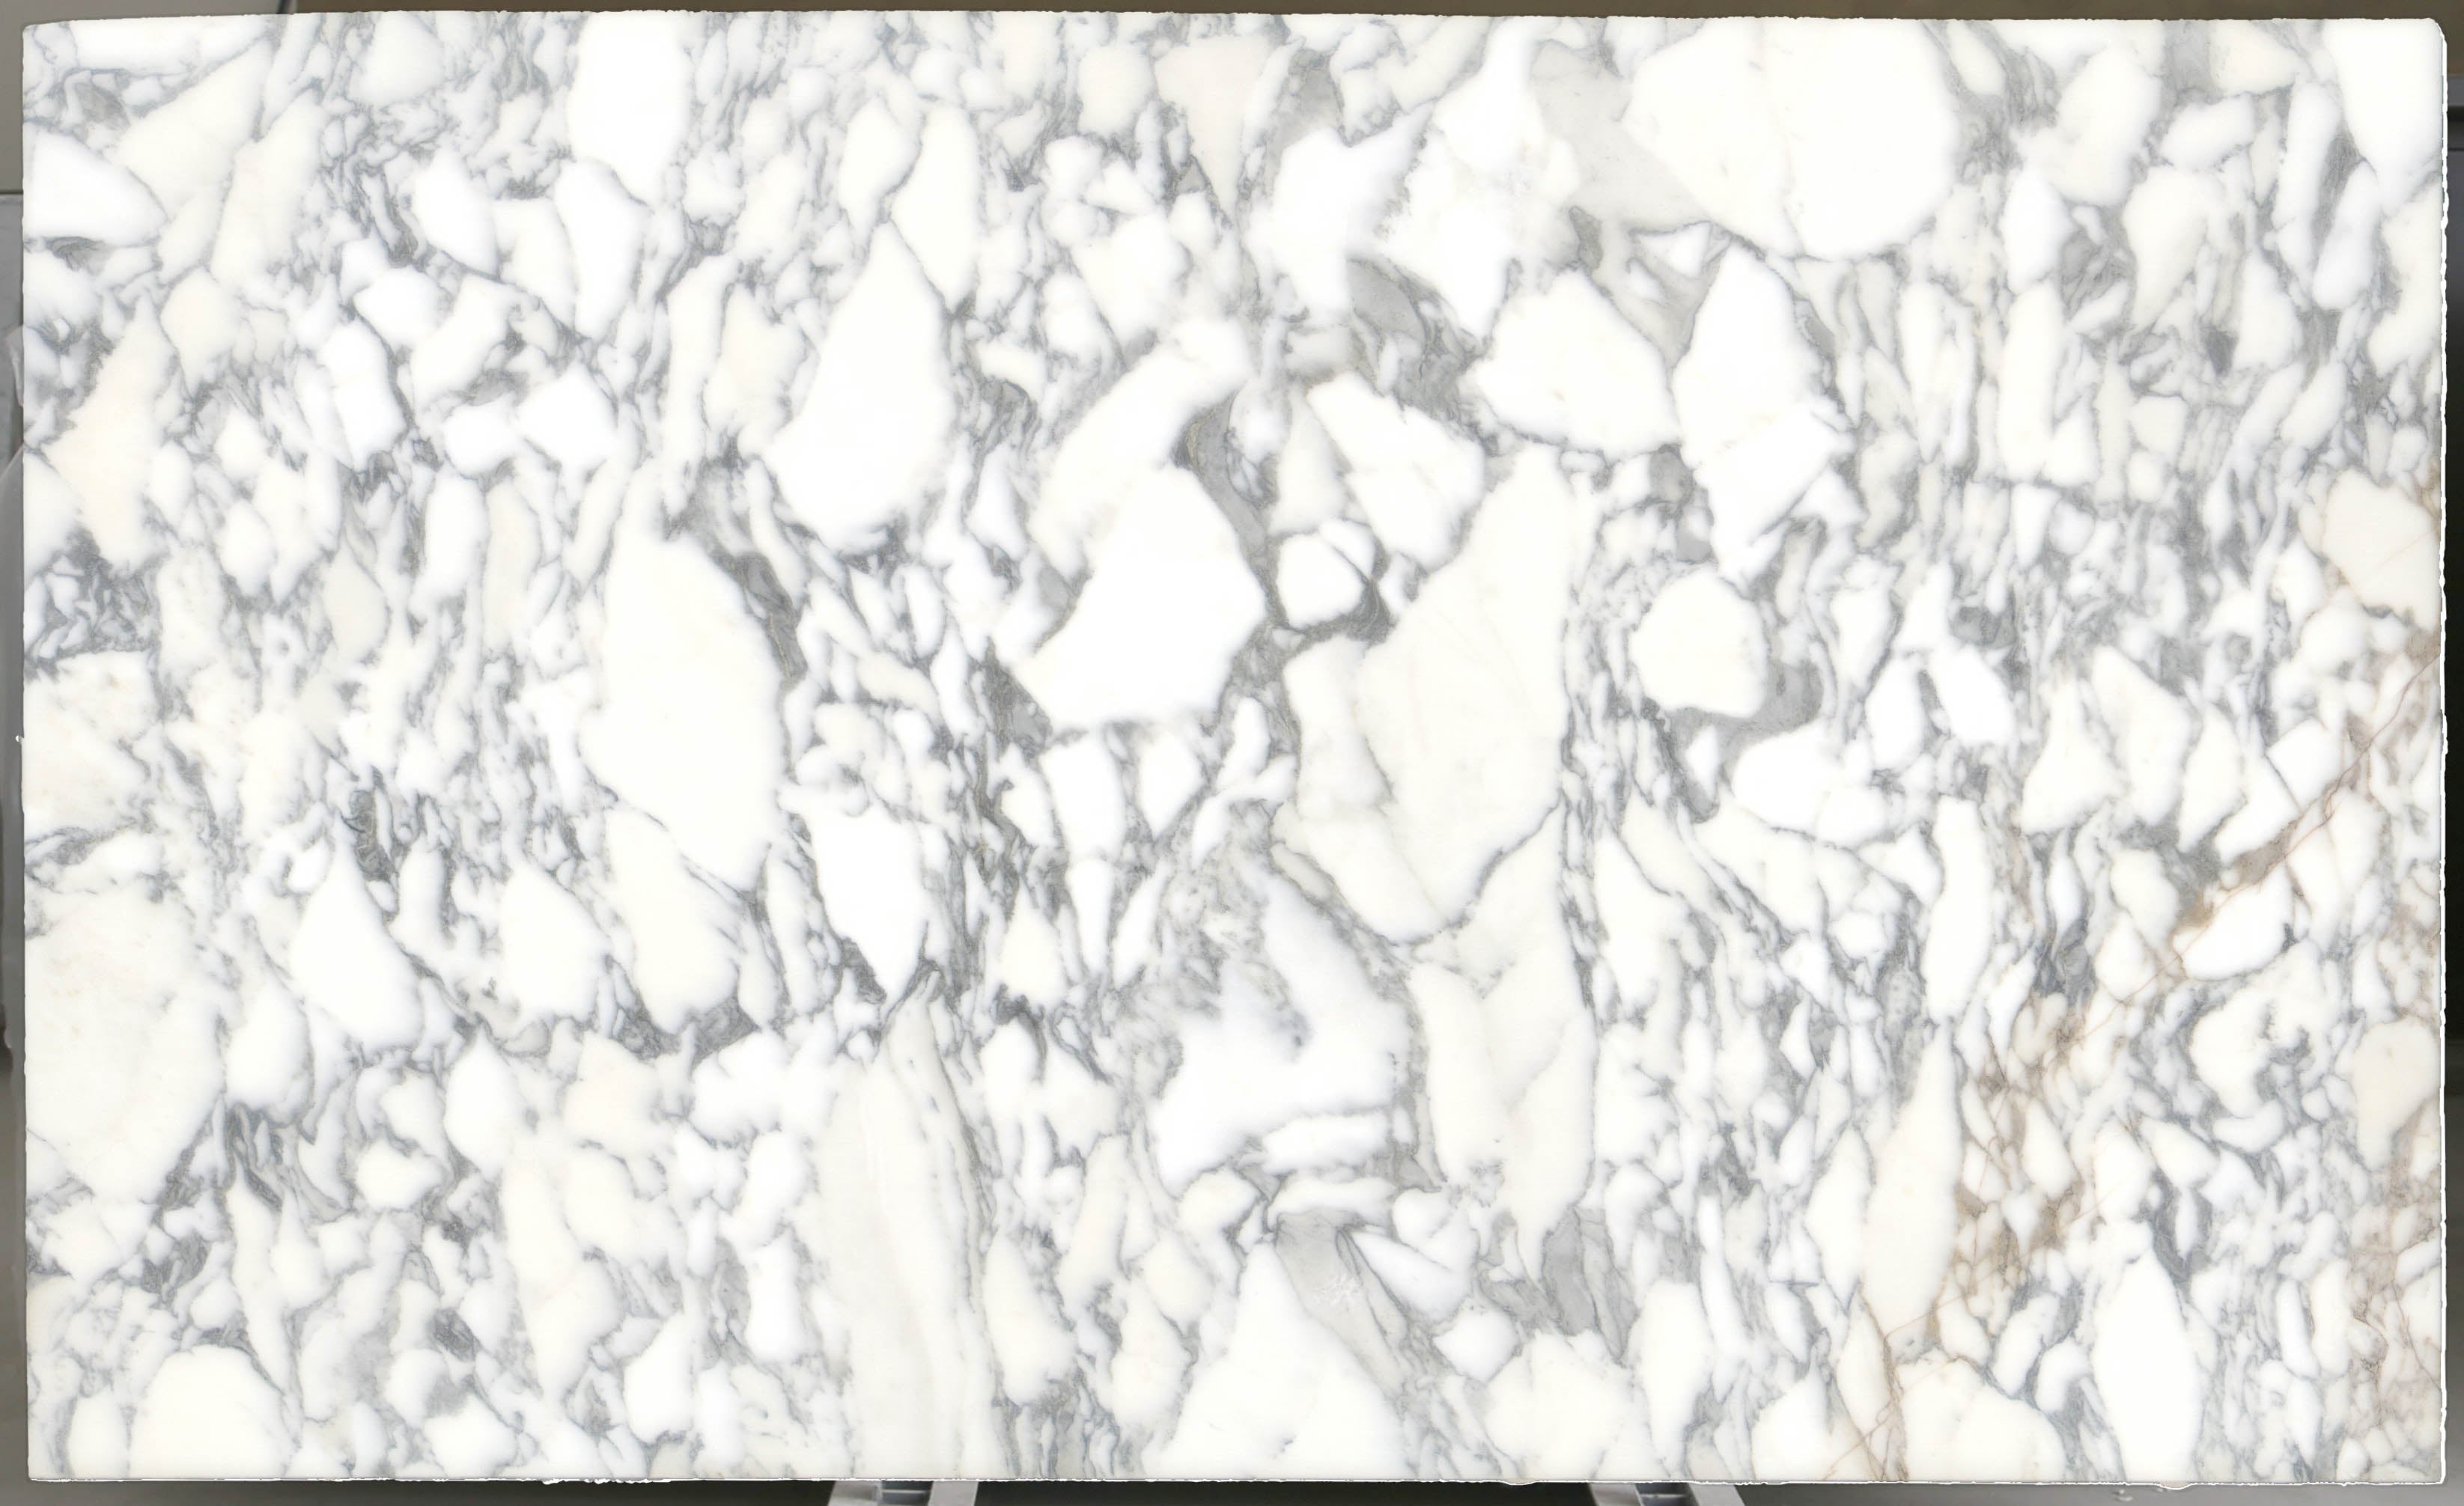  Arabescato Corchia Marble Slab 3/4 - 4026#23 -  VS 74x123 